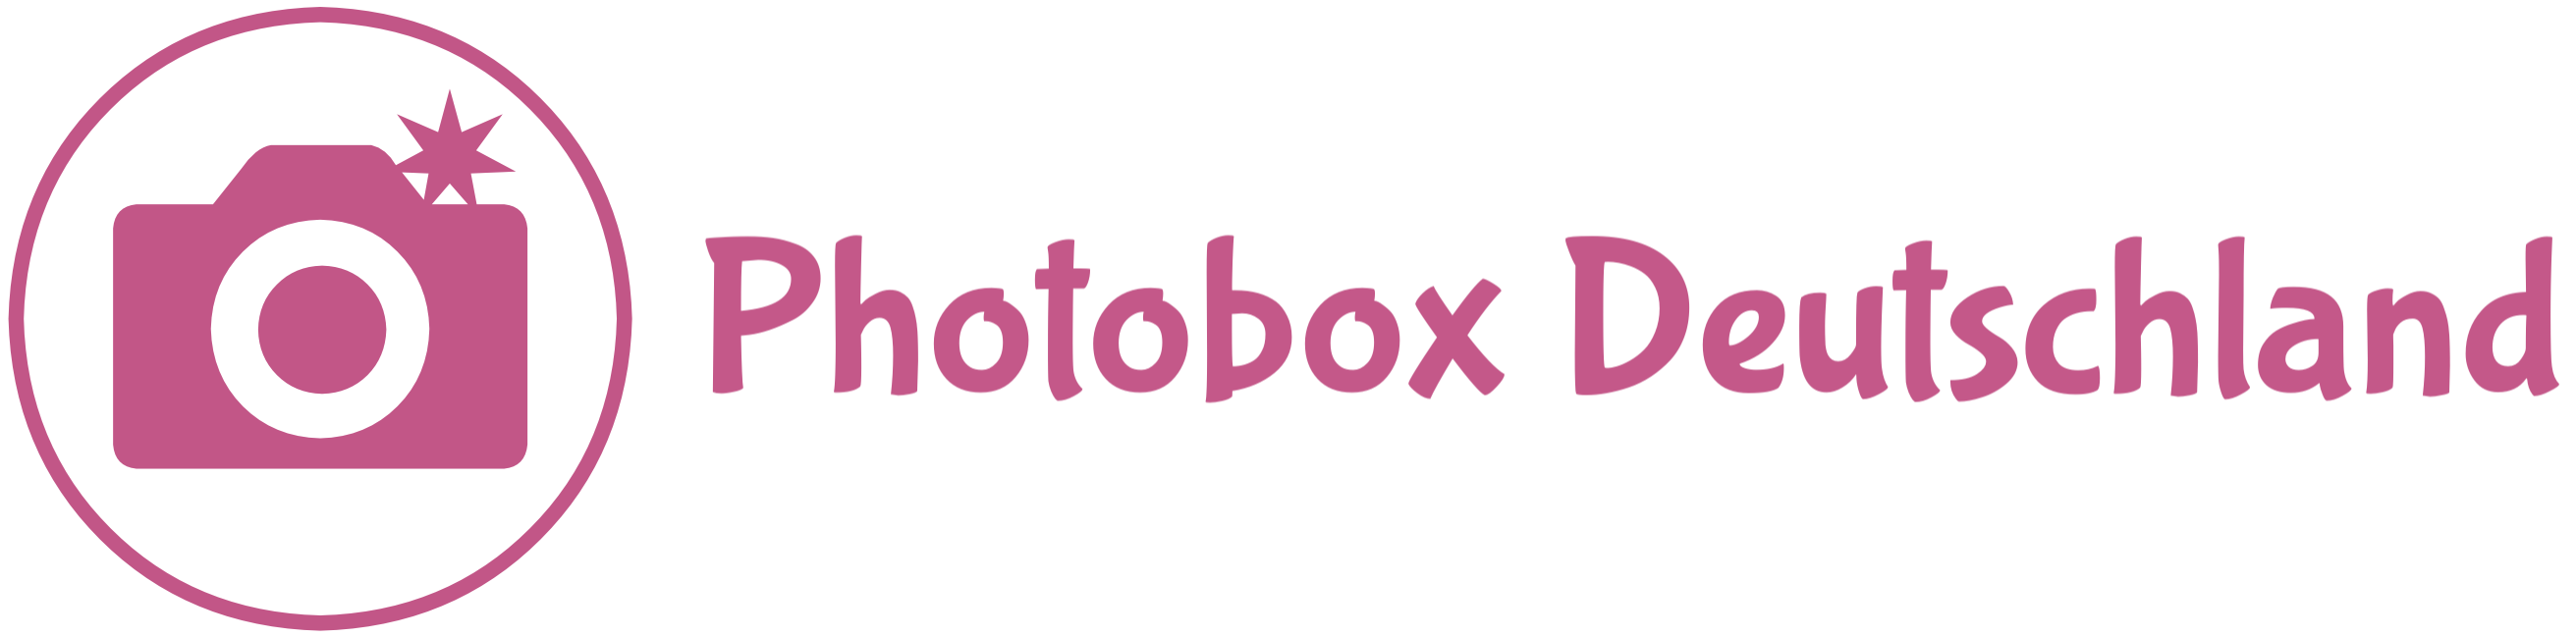 Photobox Deutschland